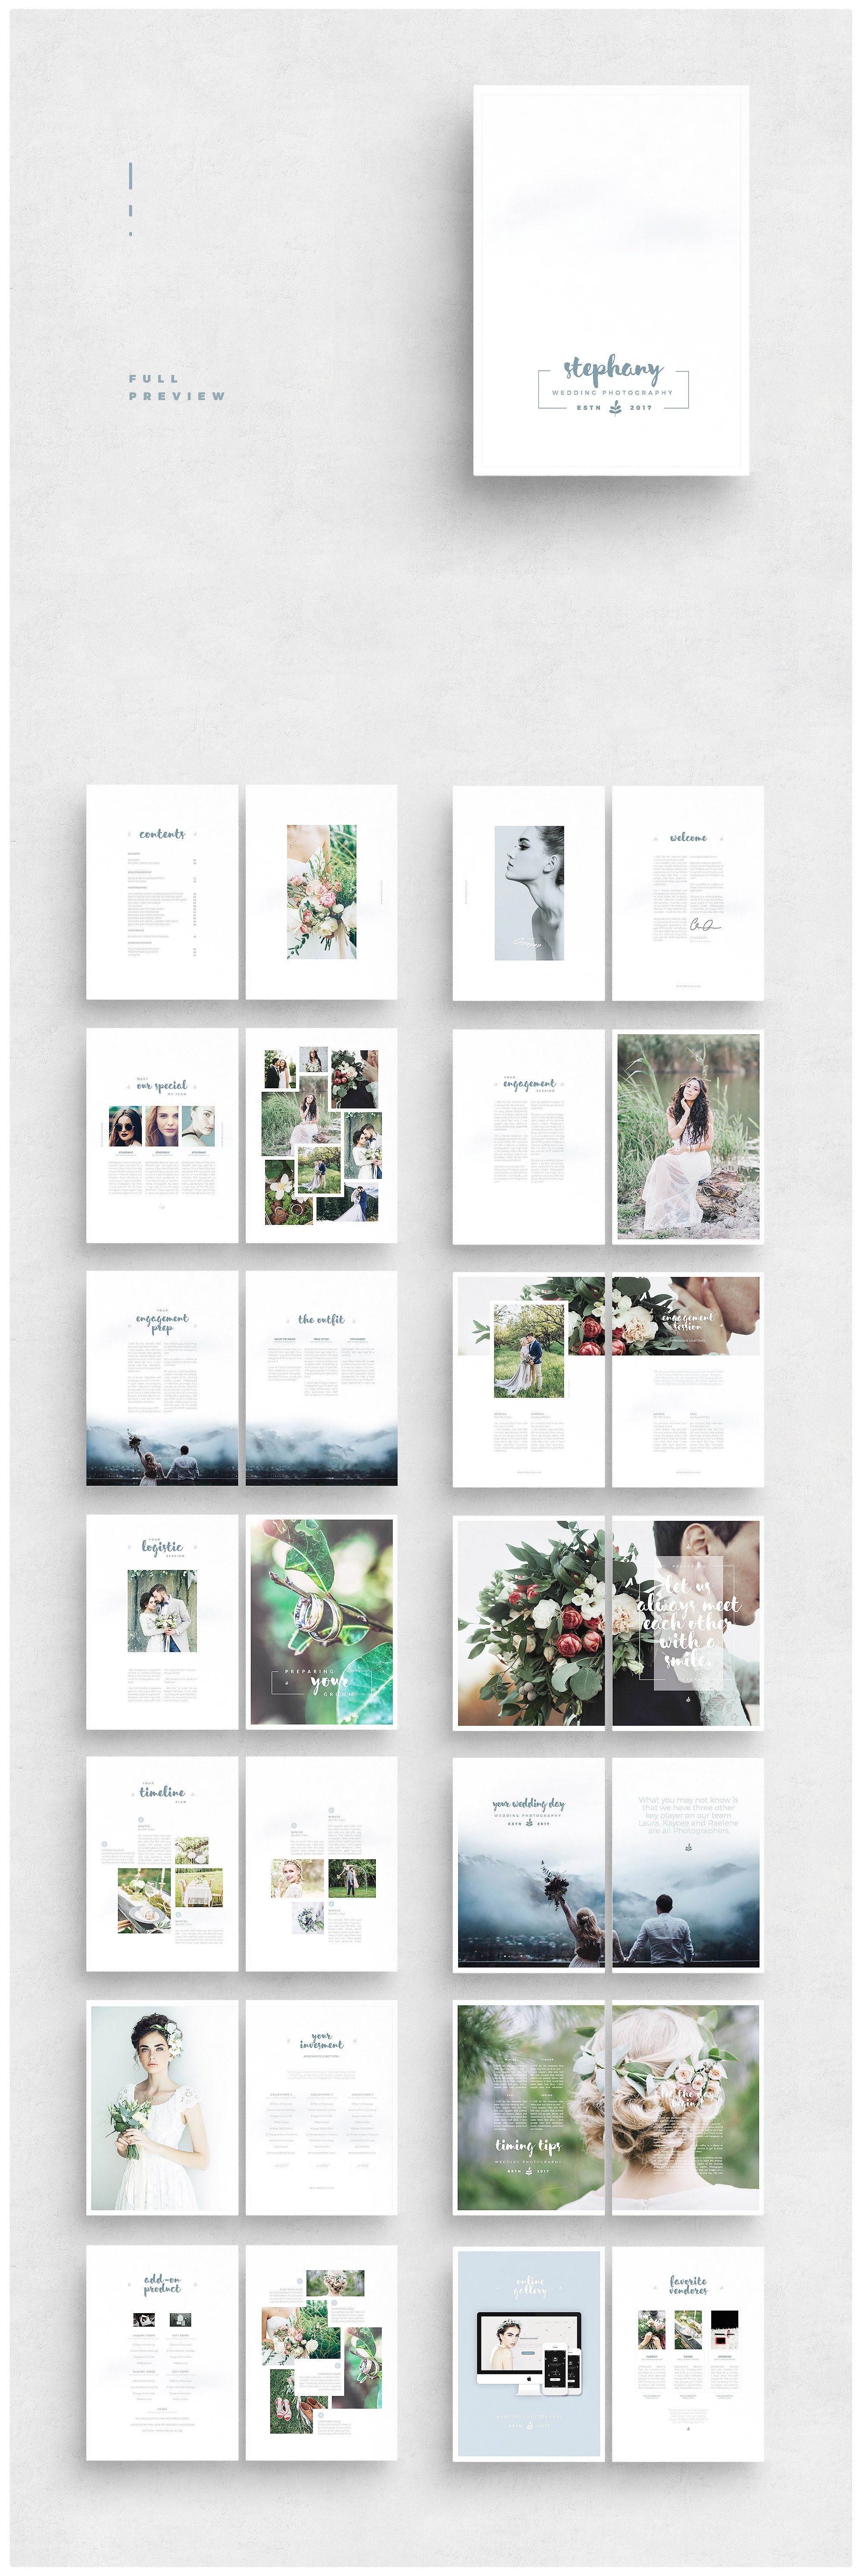 婚礼摄影杂志画册设计模板 Photographer-Maga